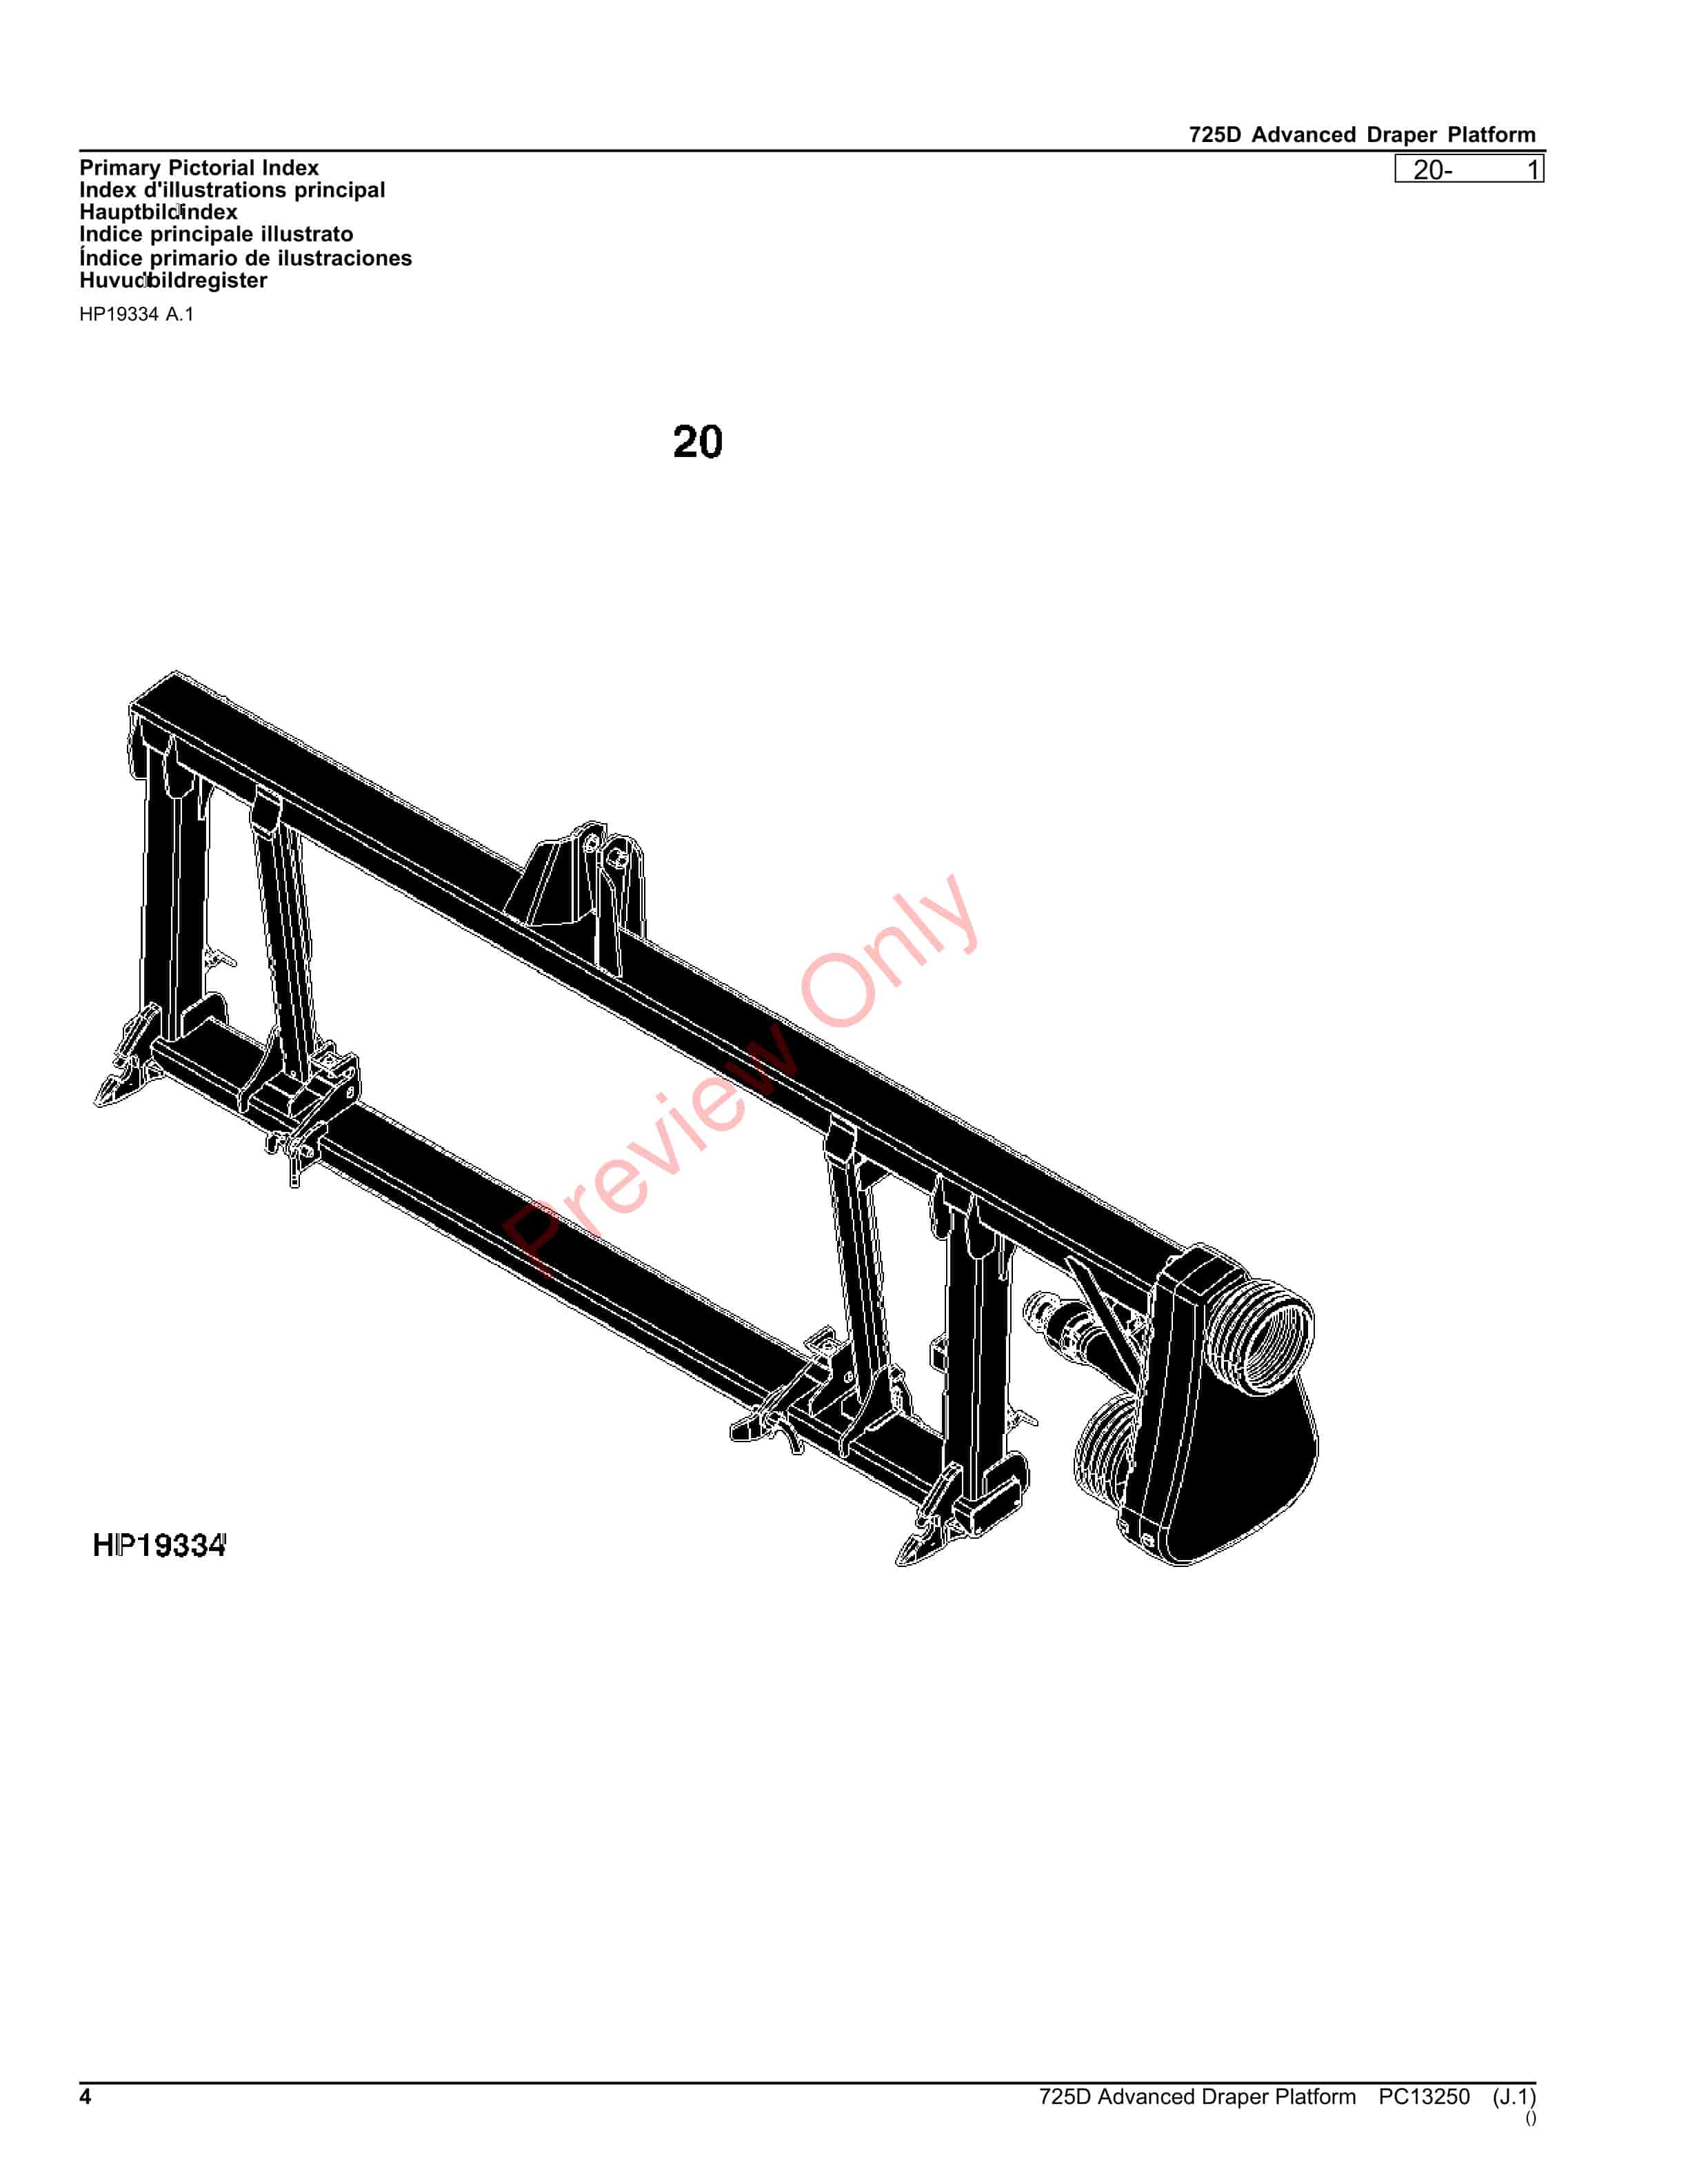 John Deere 725D Advanced Draper Platform Parts Catalog PC13250 26OCT23-4